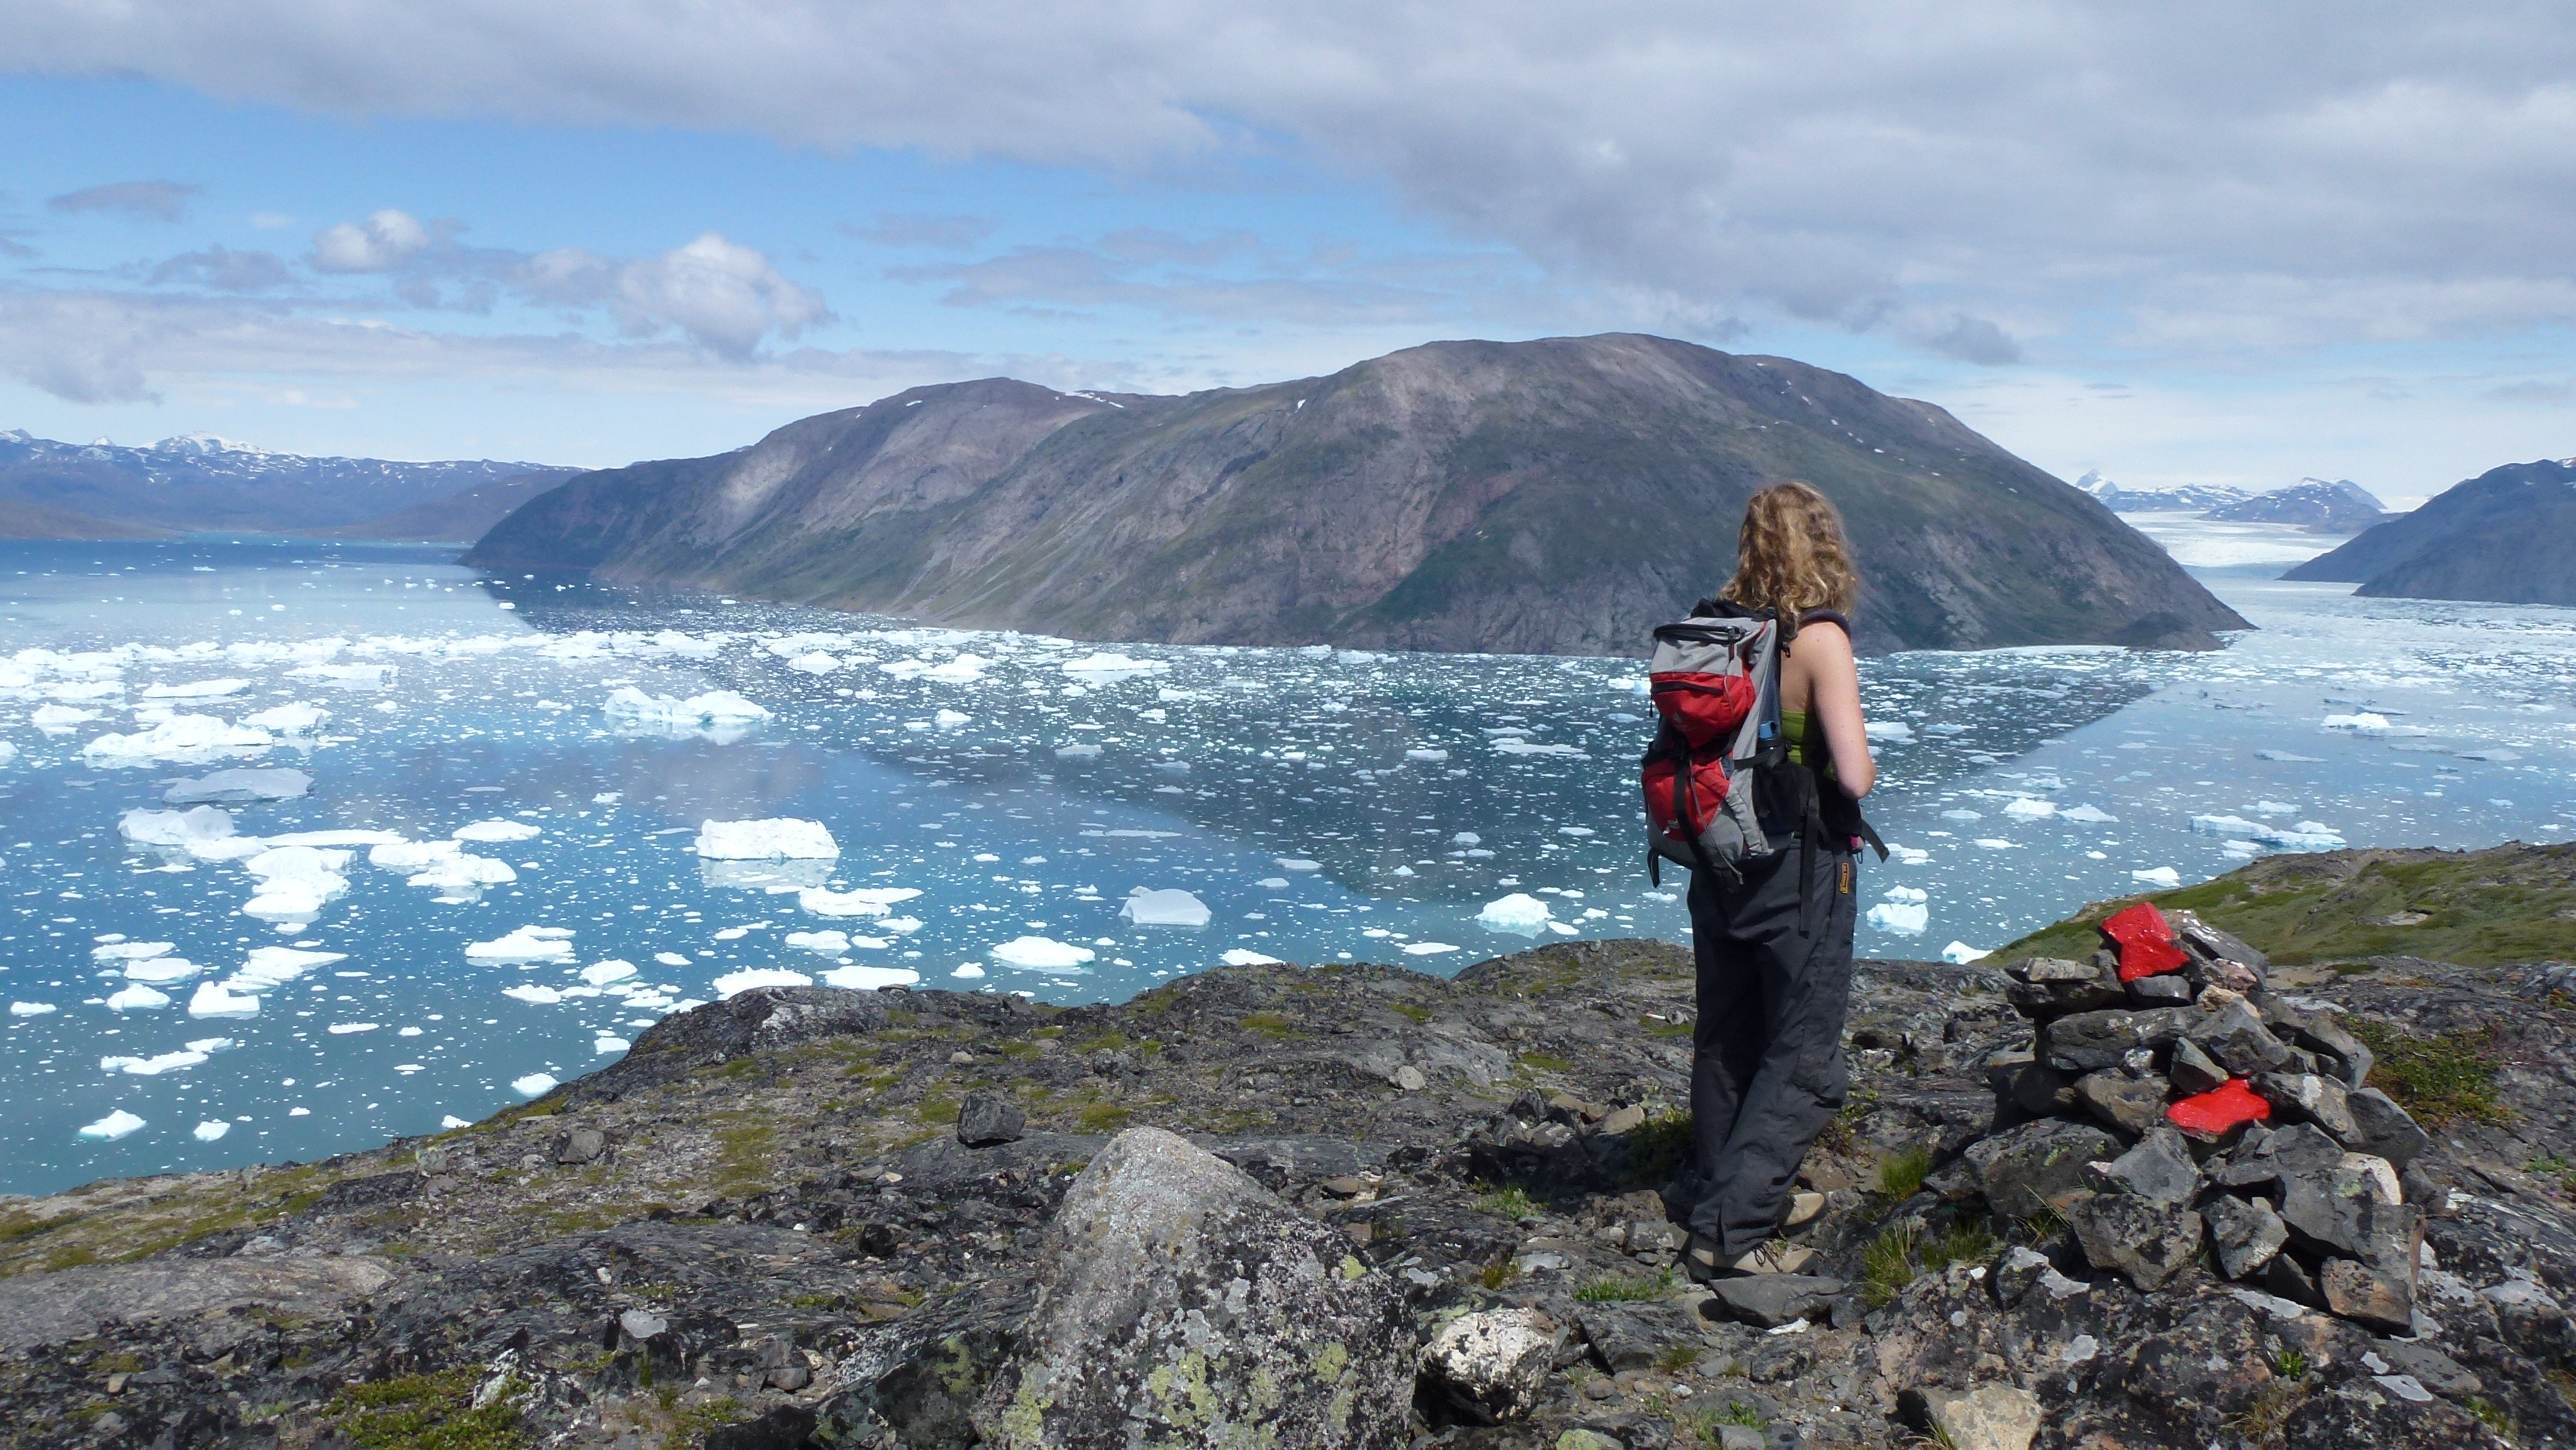 Südgrönland: Wanderung Igaliku
Wanderin blickt auf einen Eisfjord